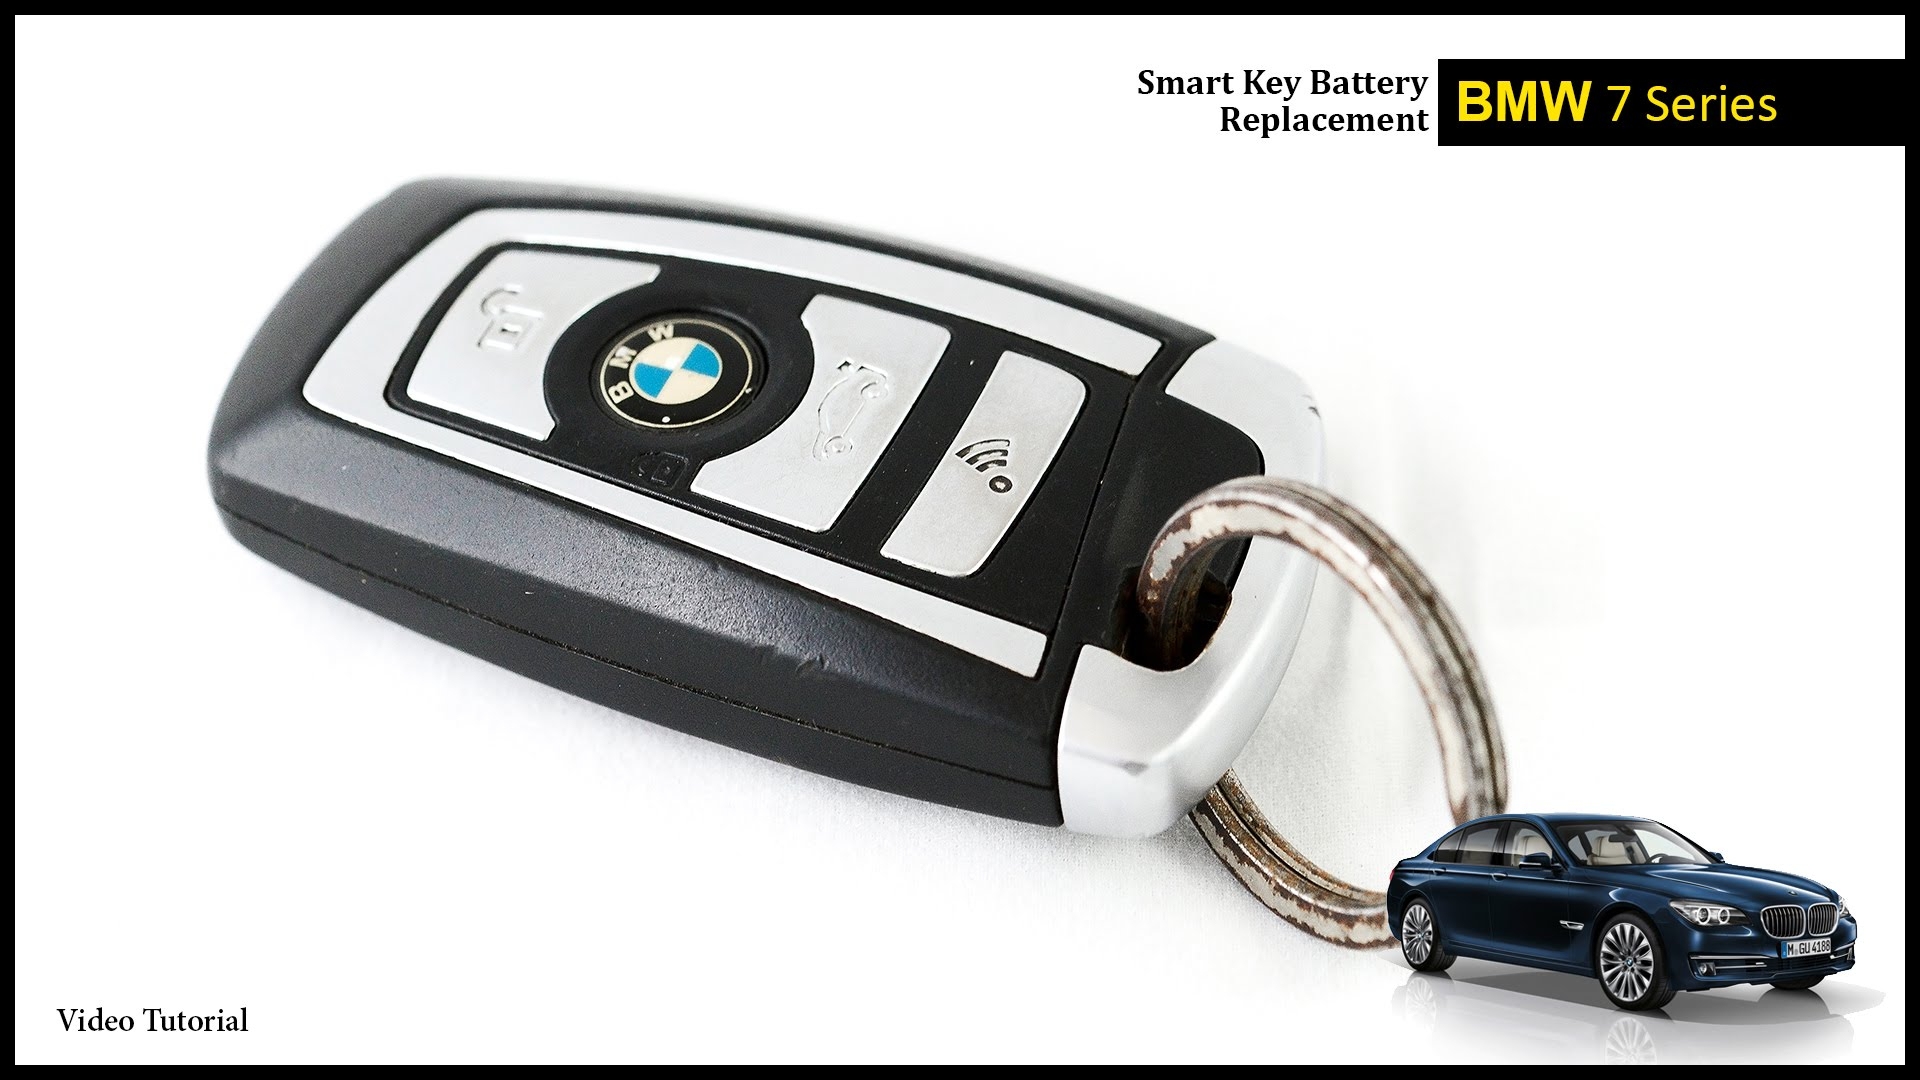 BMW 7 Series Smart Key Battery Change